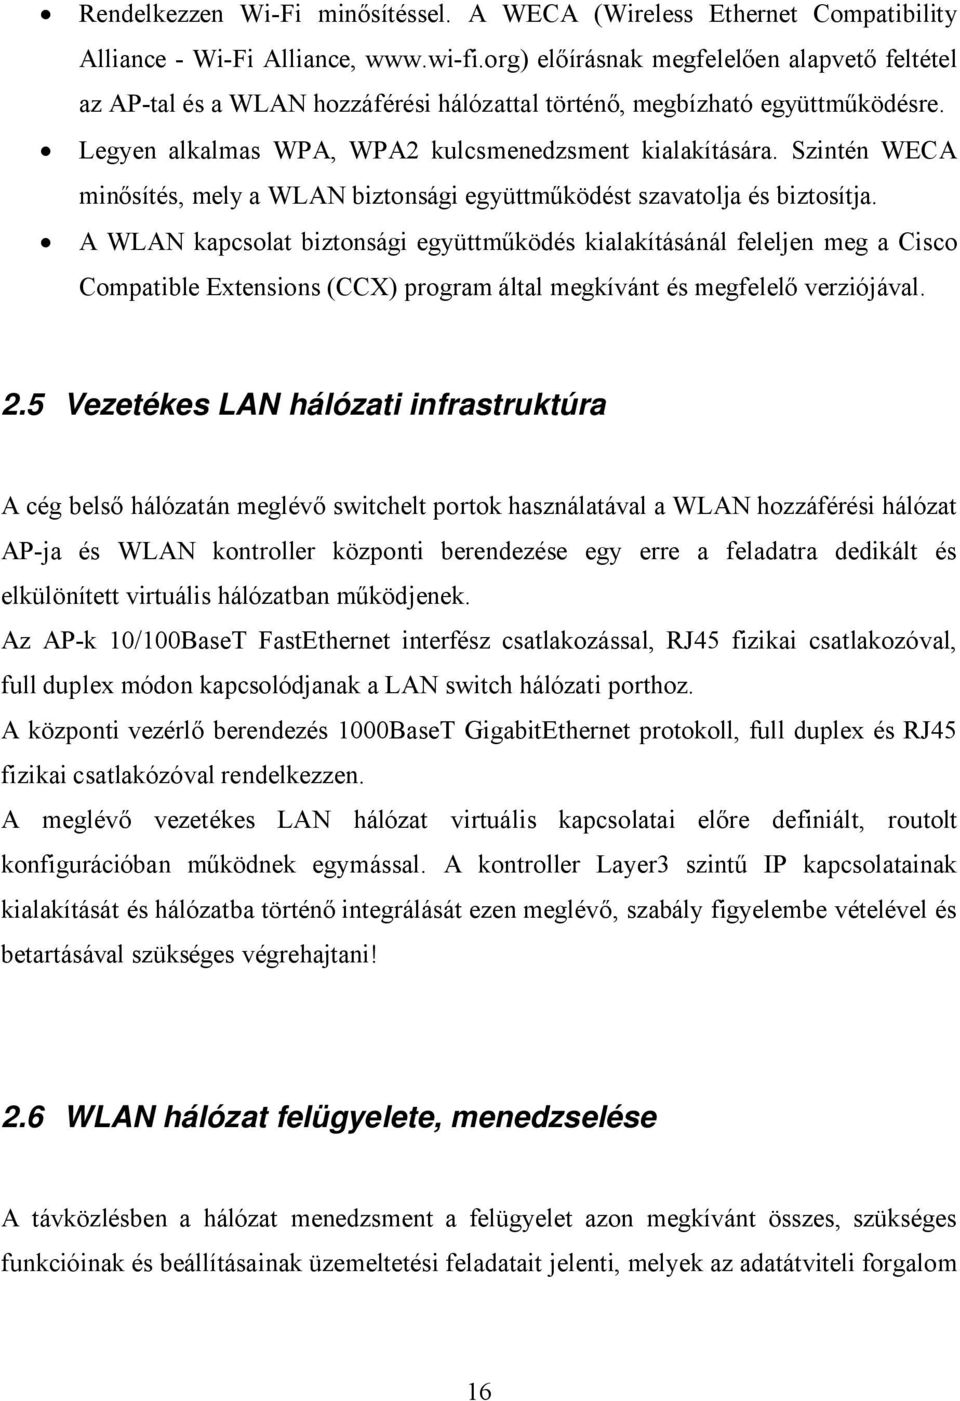 Szintén WECA minősítés, mely a WLAN biztonsági együttműködést szavatolja és biztosítja.